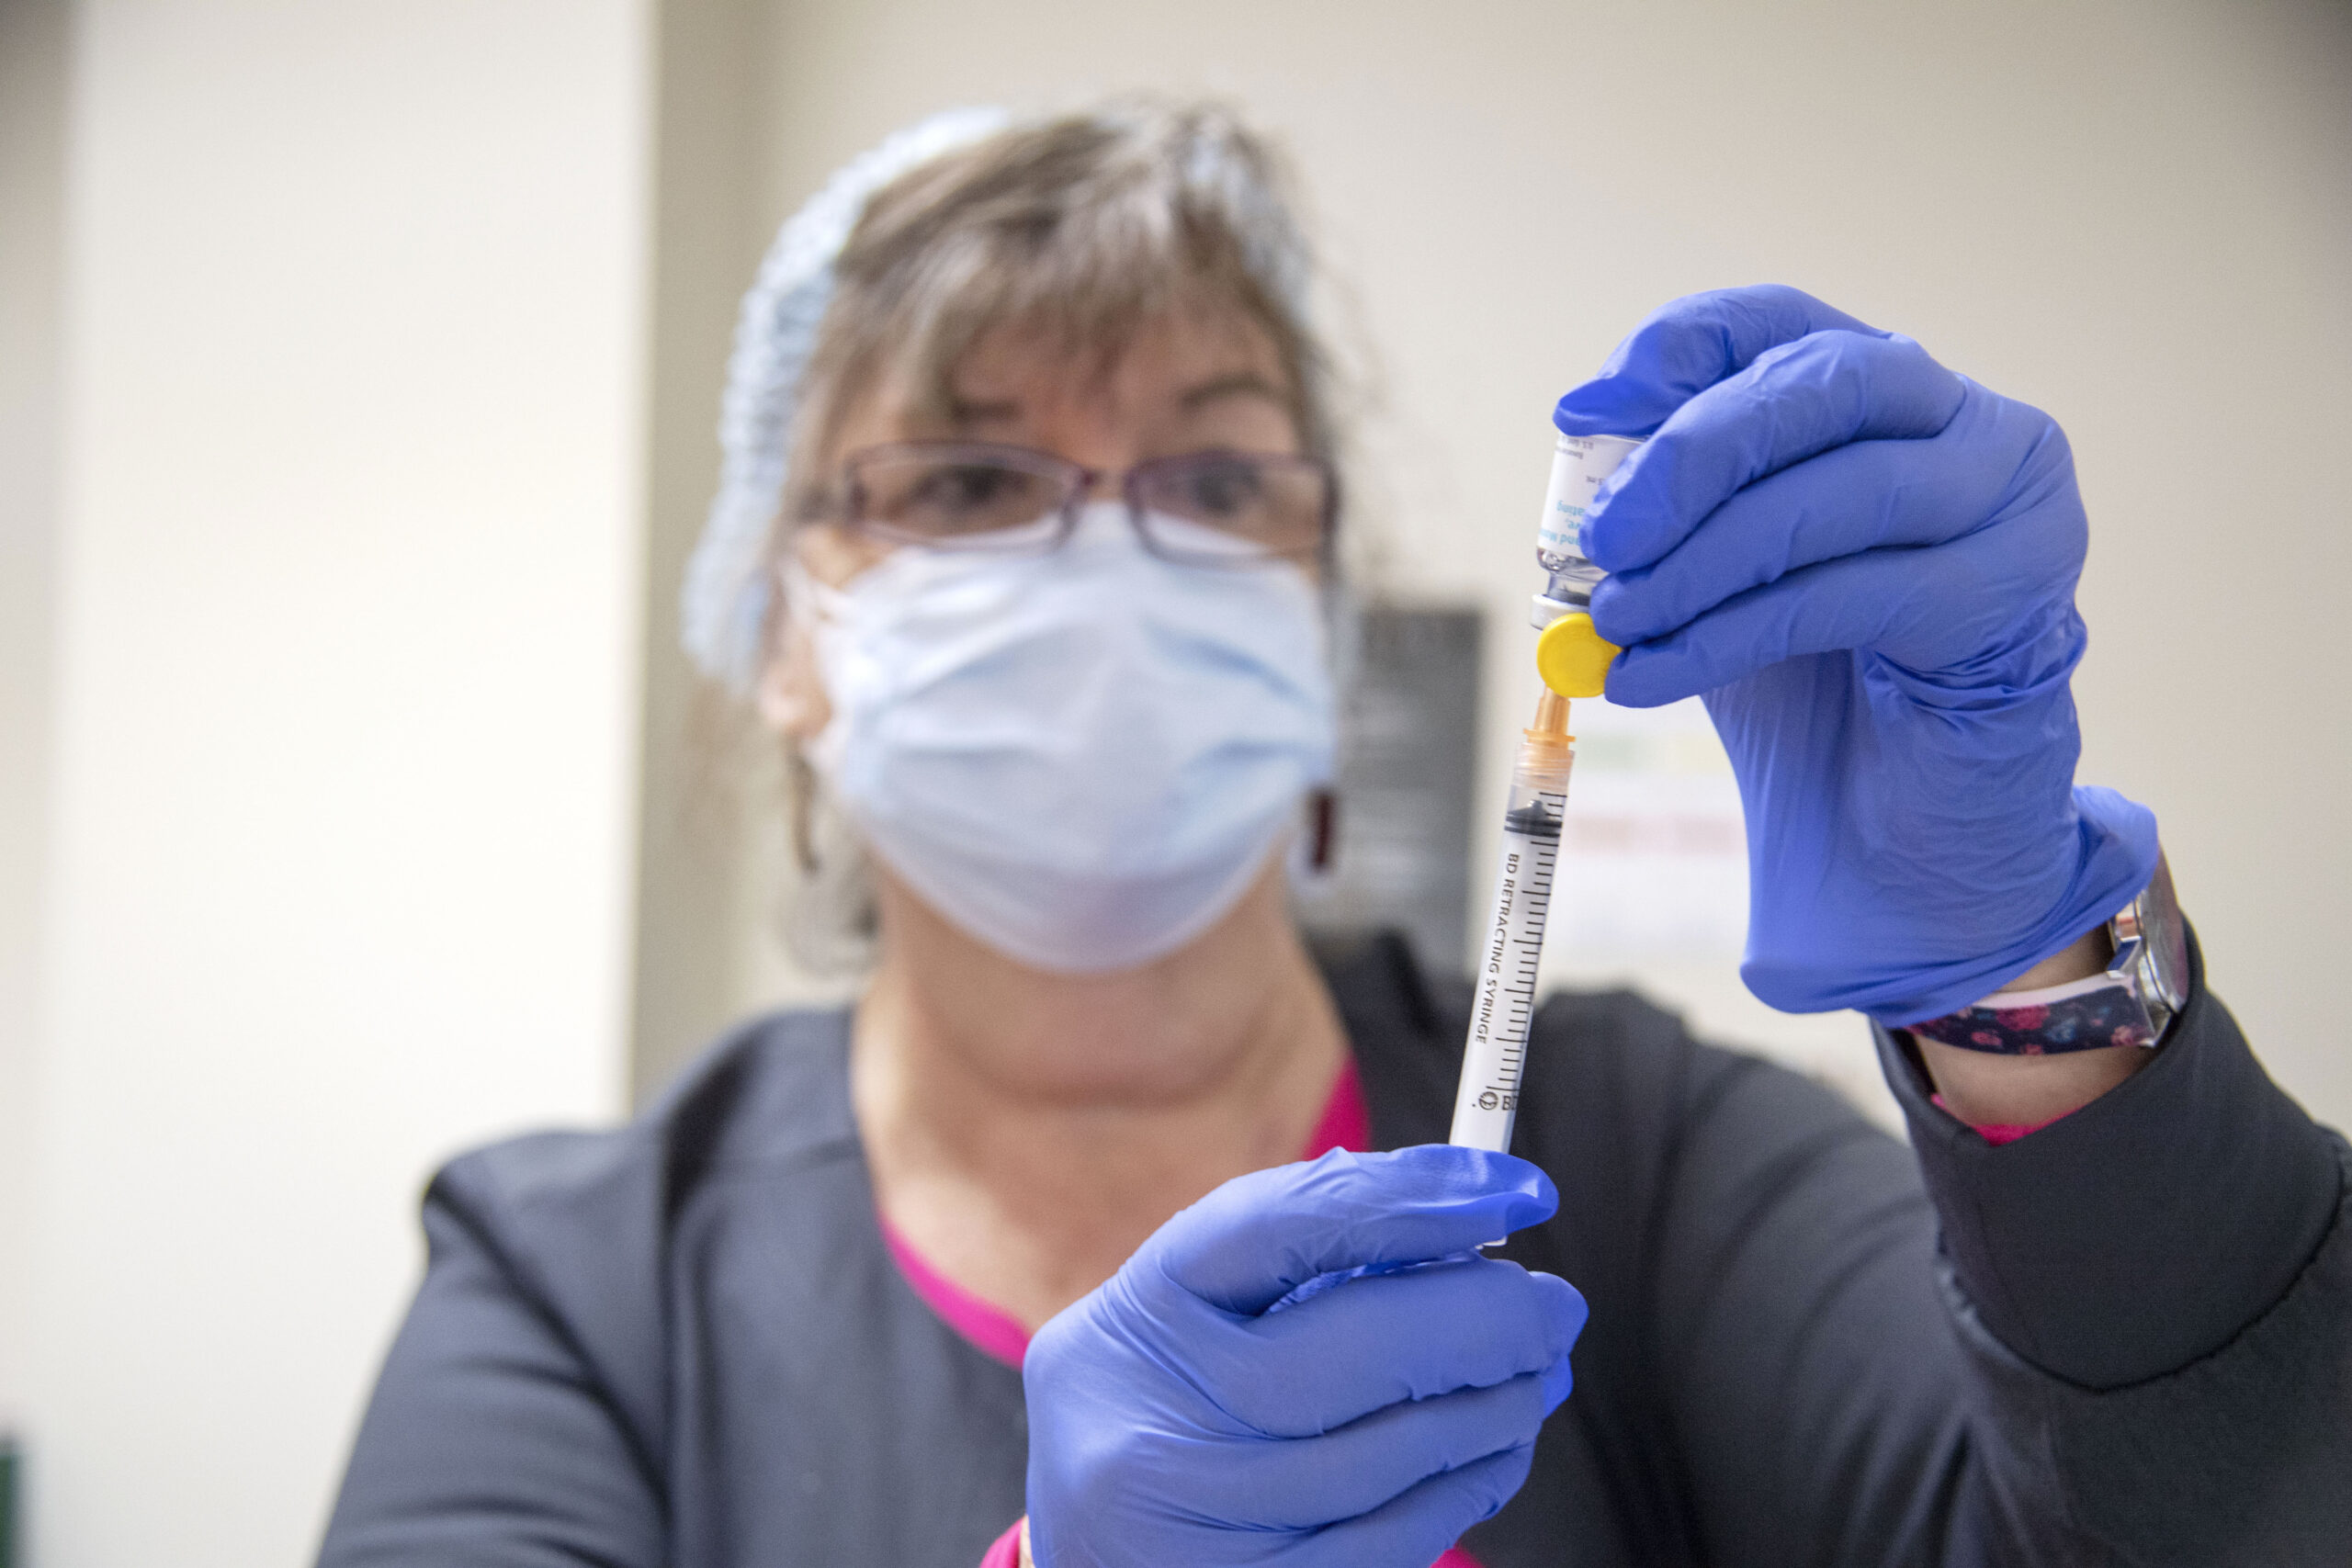 Monkeypox vaccine shortage persists as major events loom in Atlanta - WABE